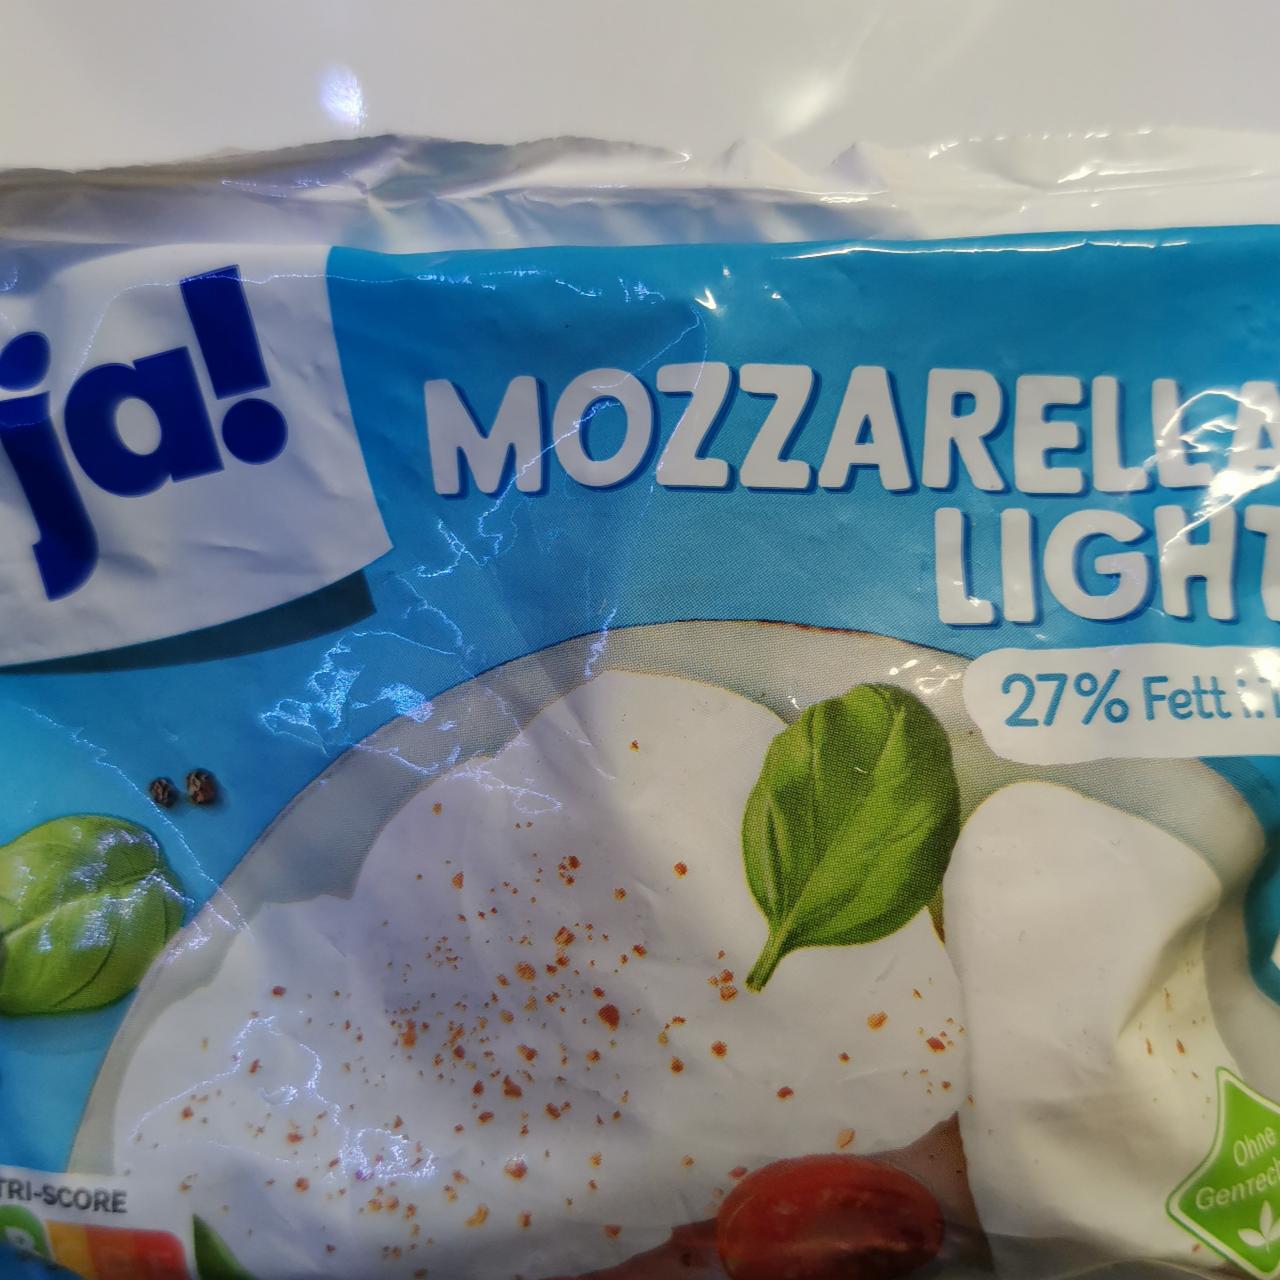 Fotografie - Mozzarella light 27% Fett Ja!